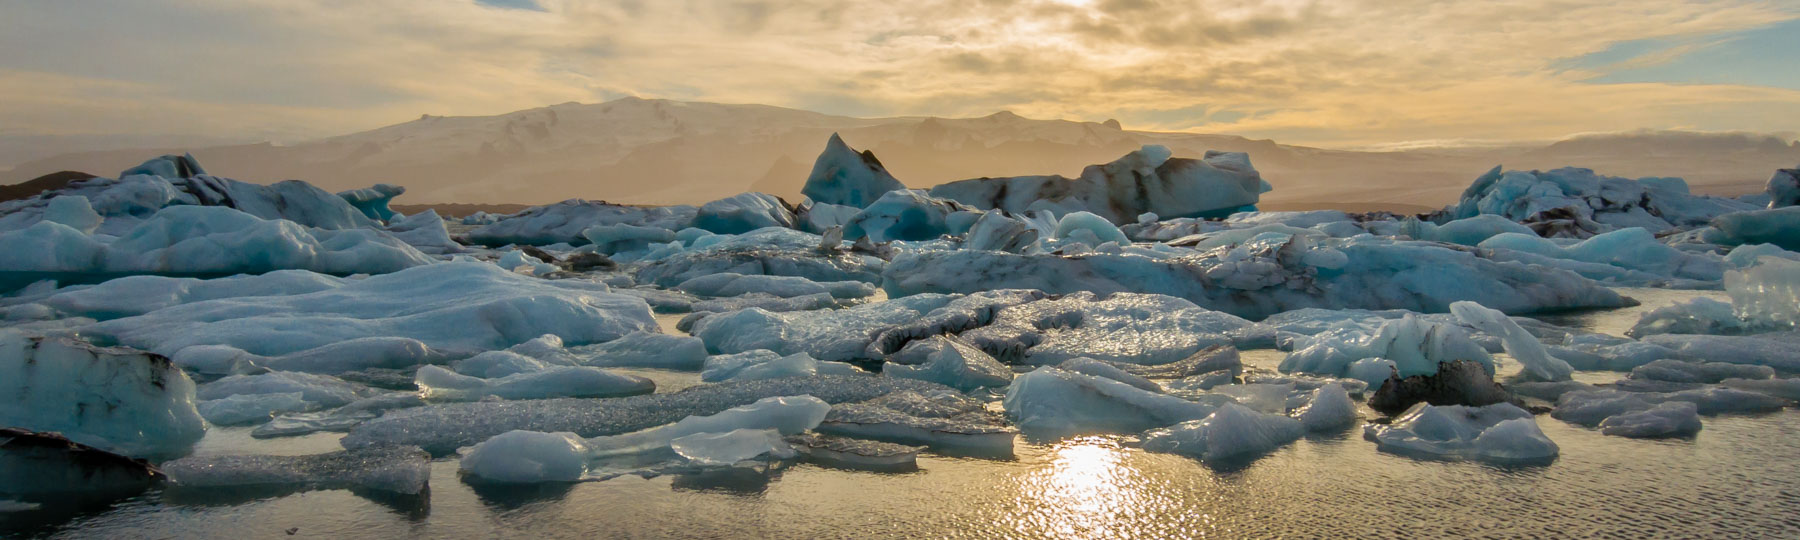 Iceland Iceberg Lagoon